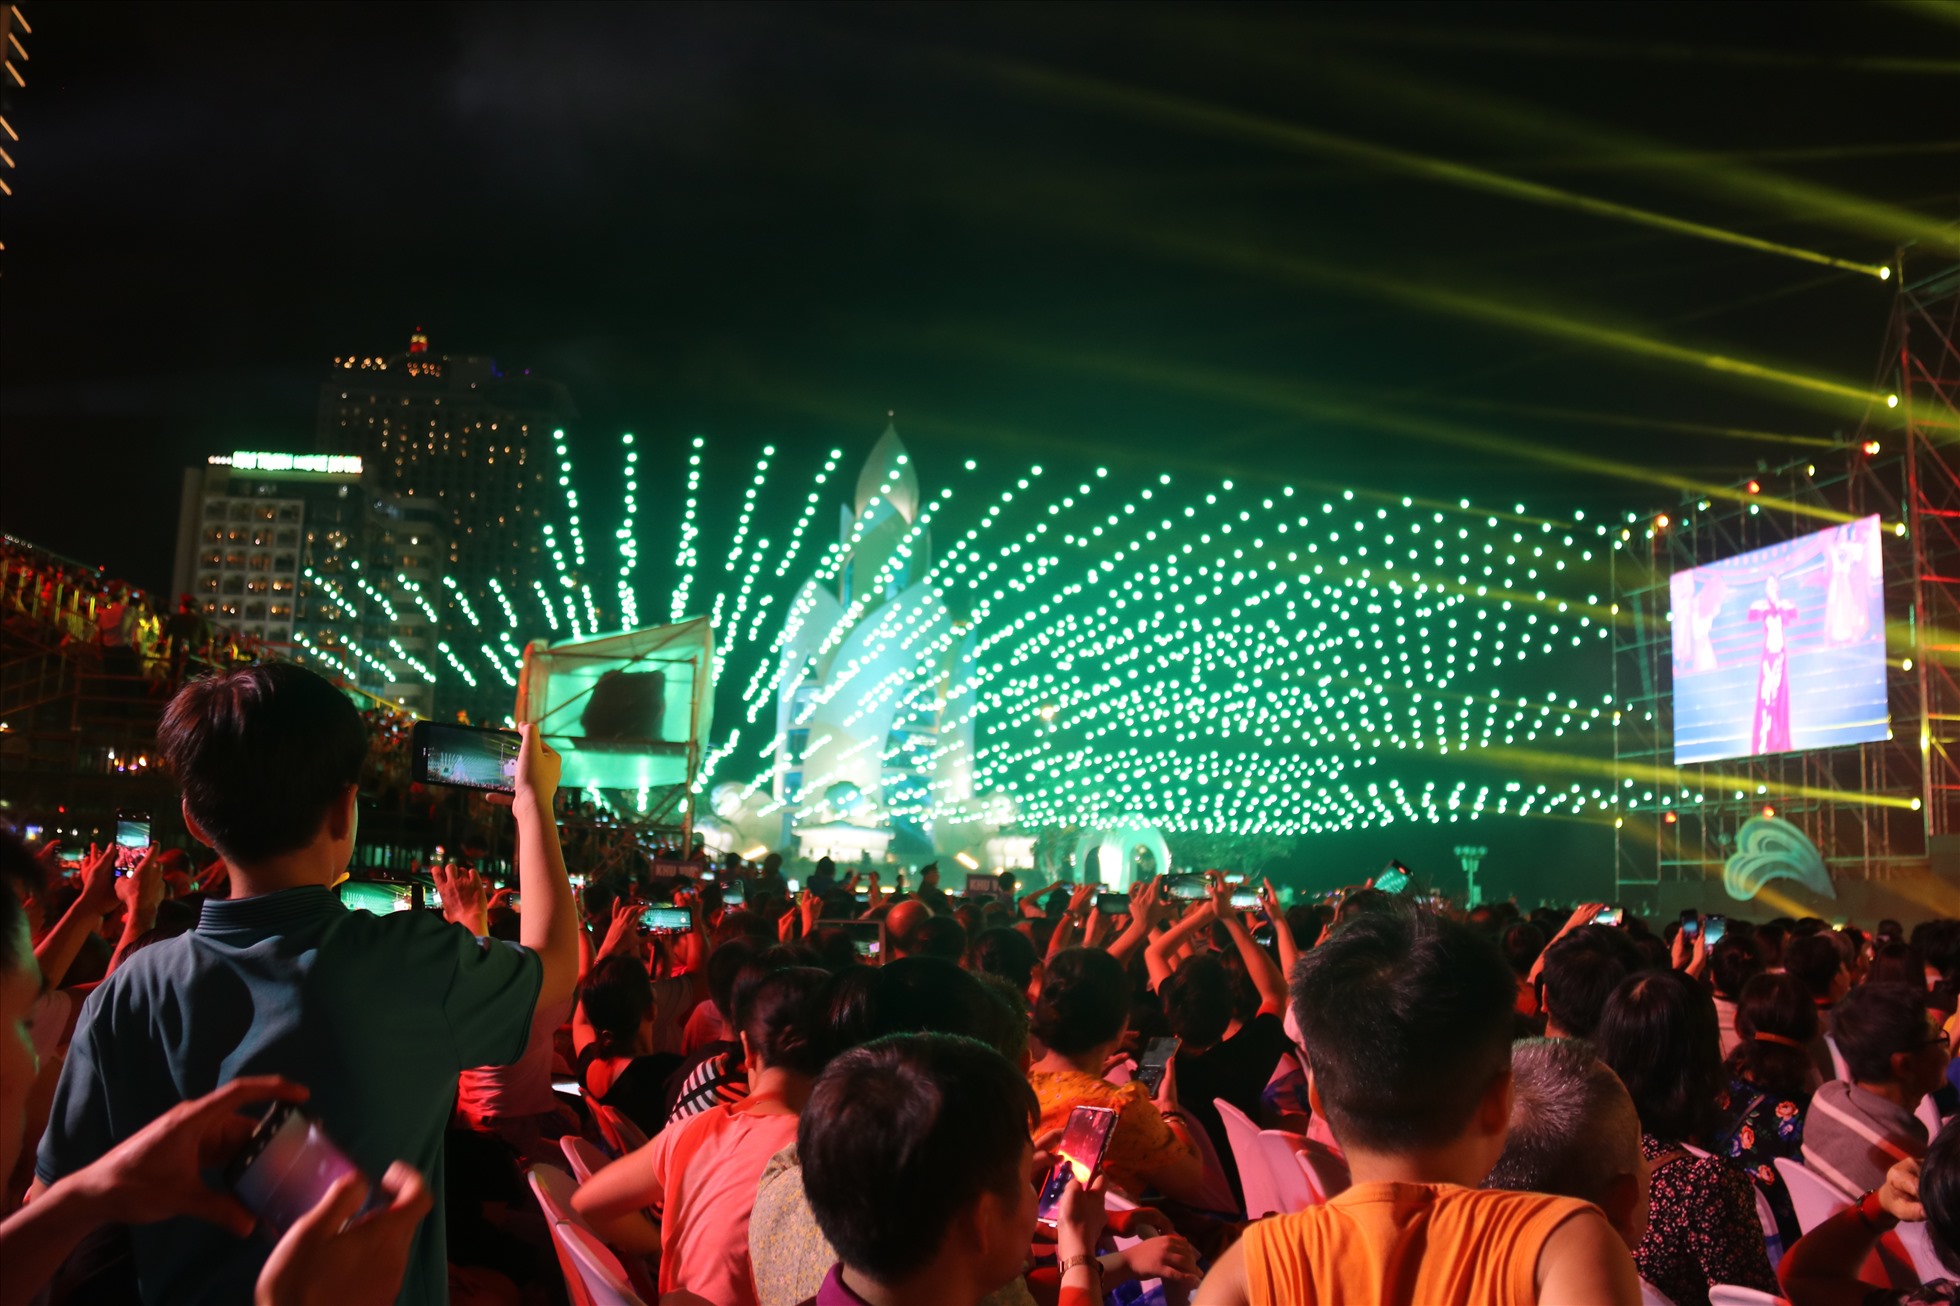 1.653 phương tiện bay không người lái lần đầu tiên xuất hiện tại đêm khai mạc Festival biển Nha Trang- Khánh Hòa lần thứ 10. Ảnh: Phương Linh